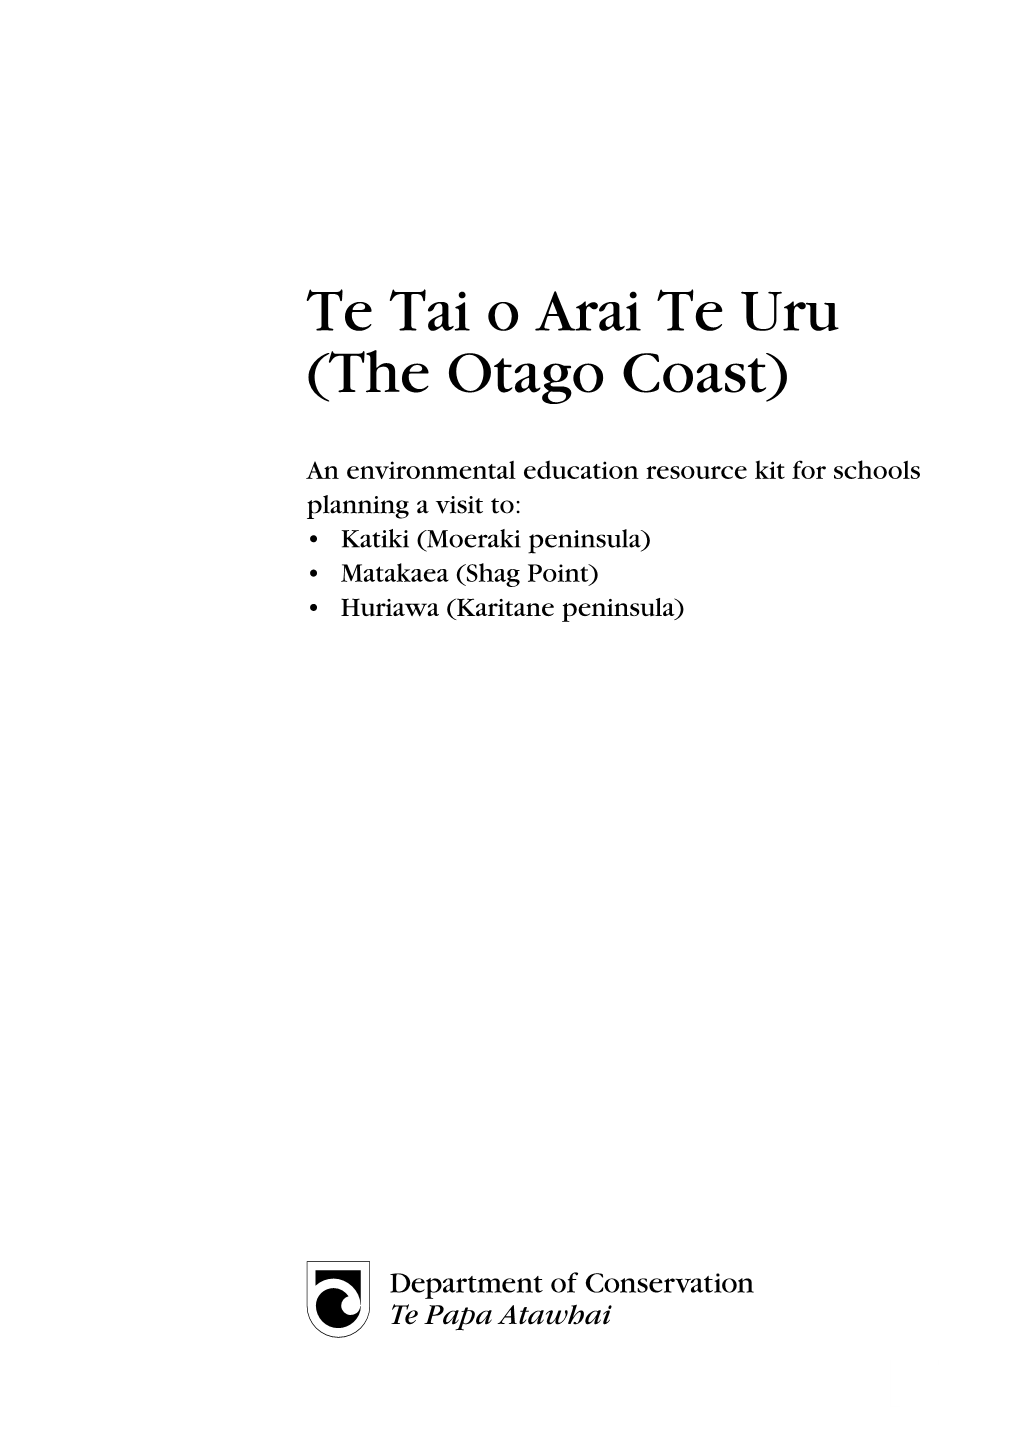 Te Tai O Arai Te Uru (The Otago Coast)